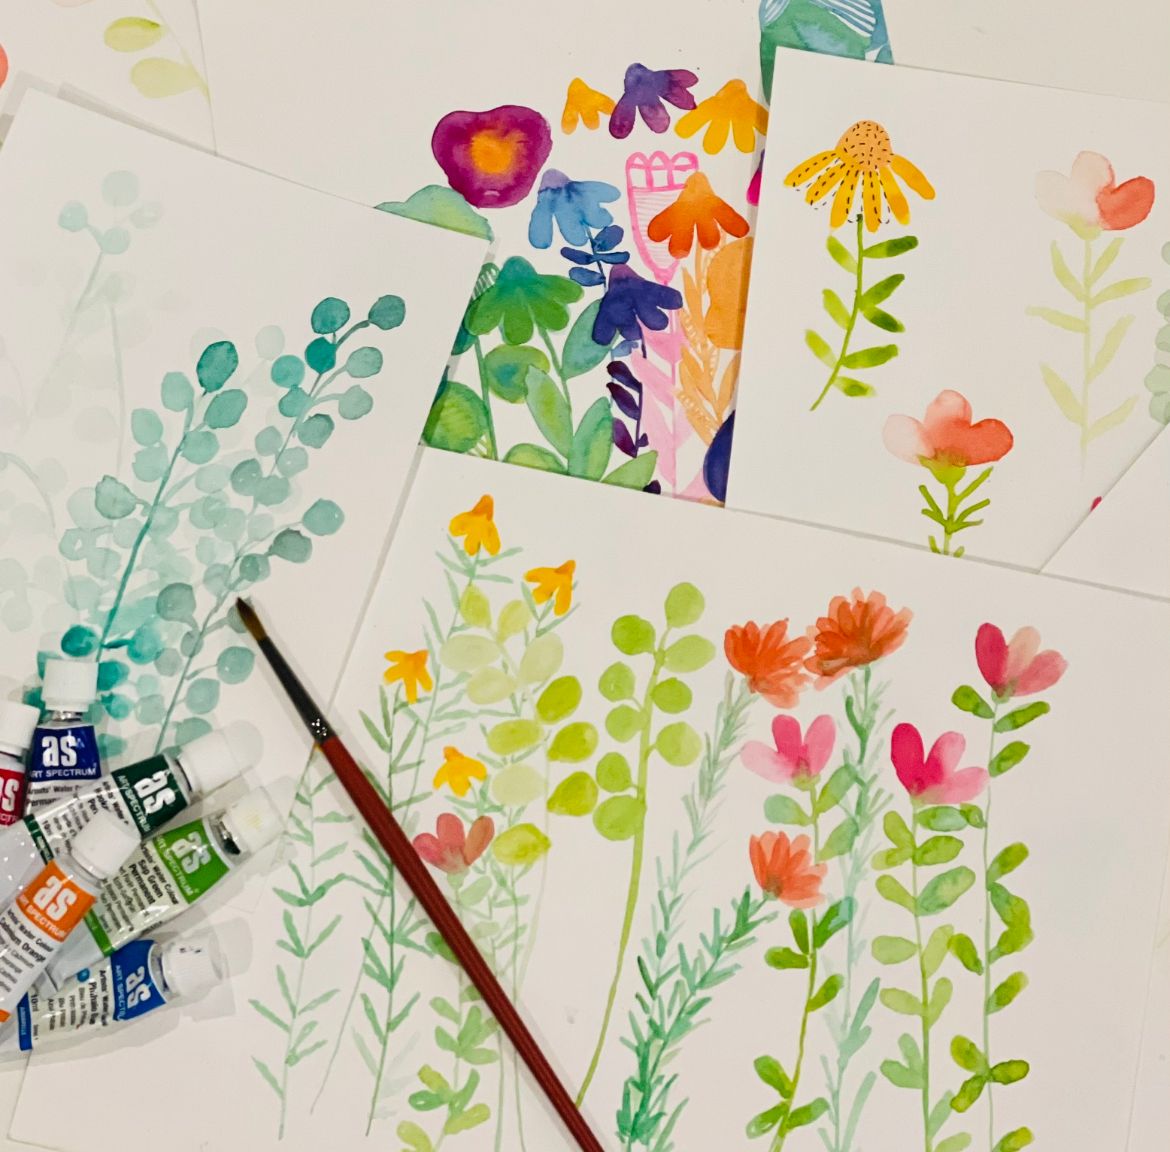 Watercolour Flowers & Foliage with Kim Miatke